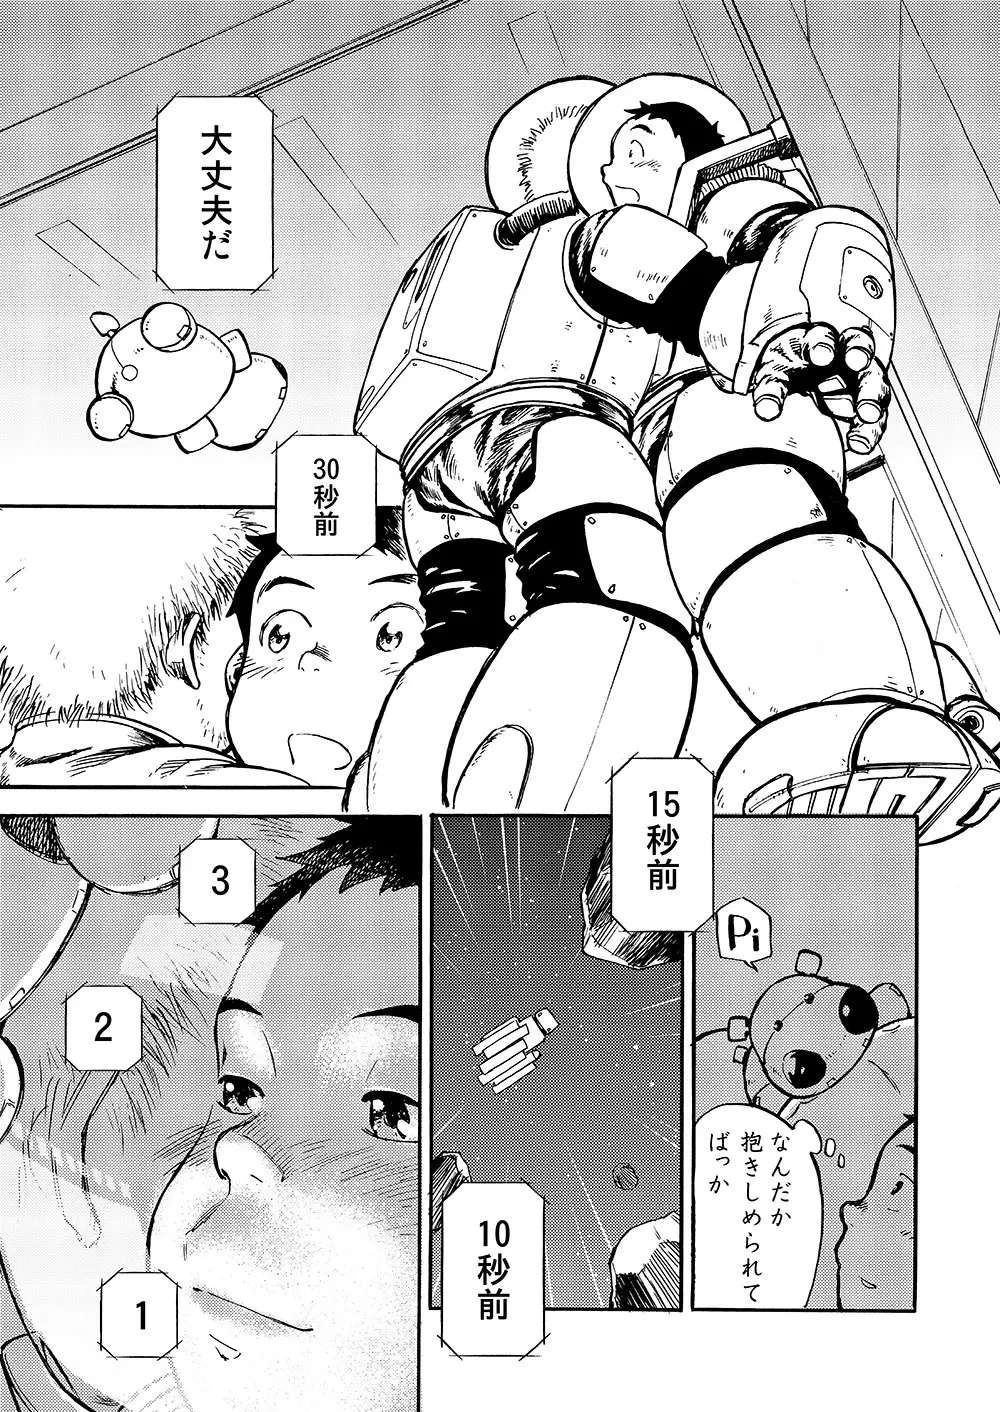 漫画少年ズーム vol.02 29ページ